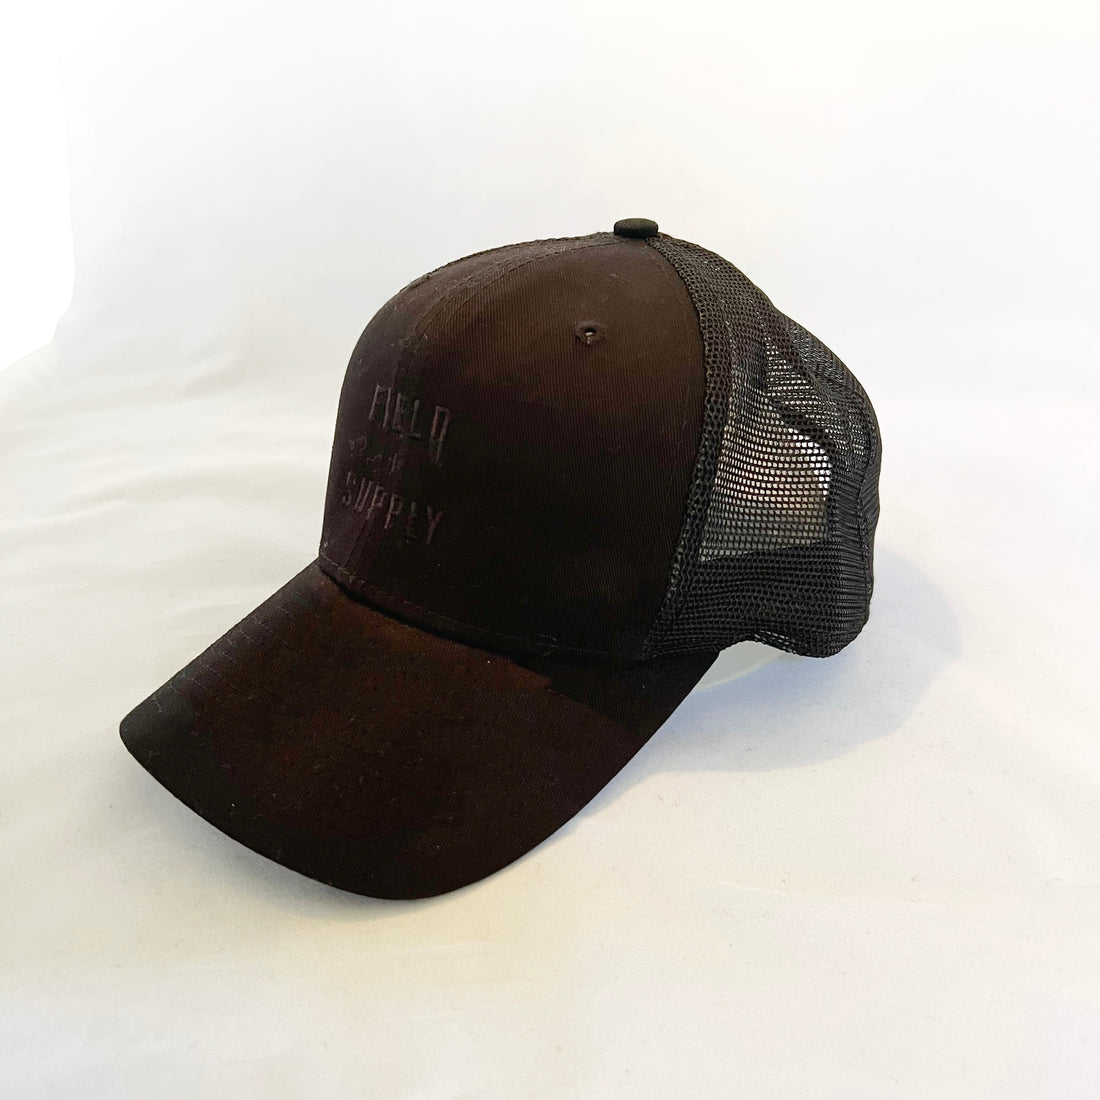 Trucker Hat (Black) -Original Snapback